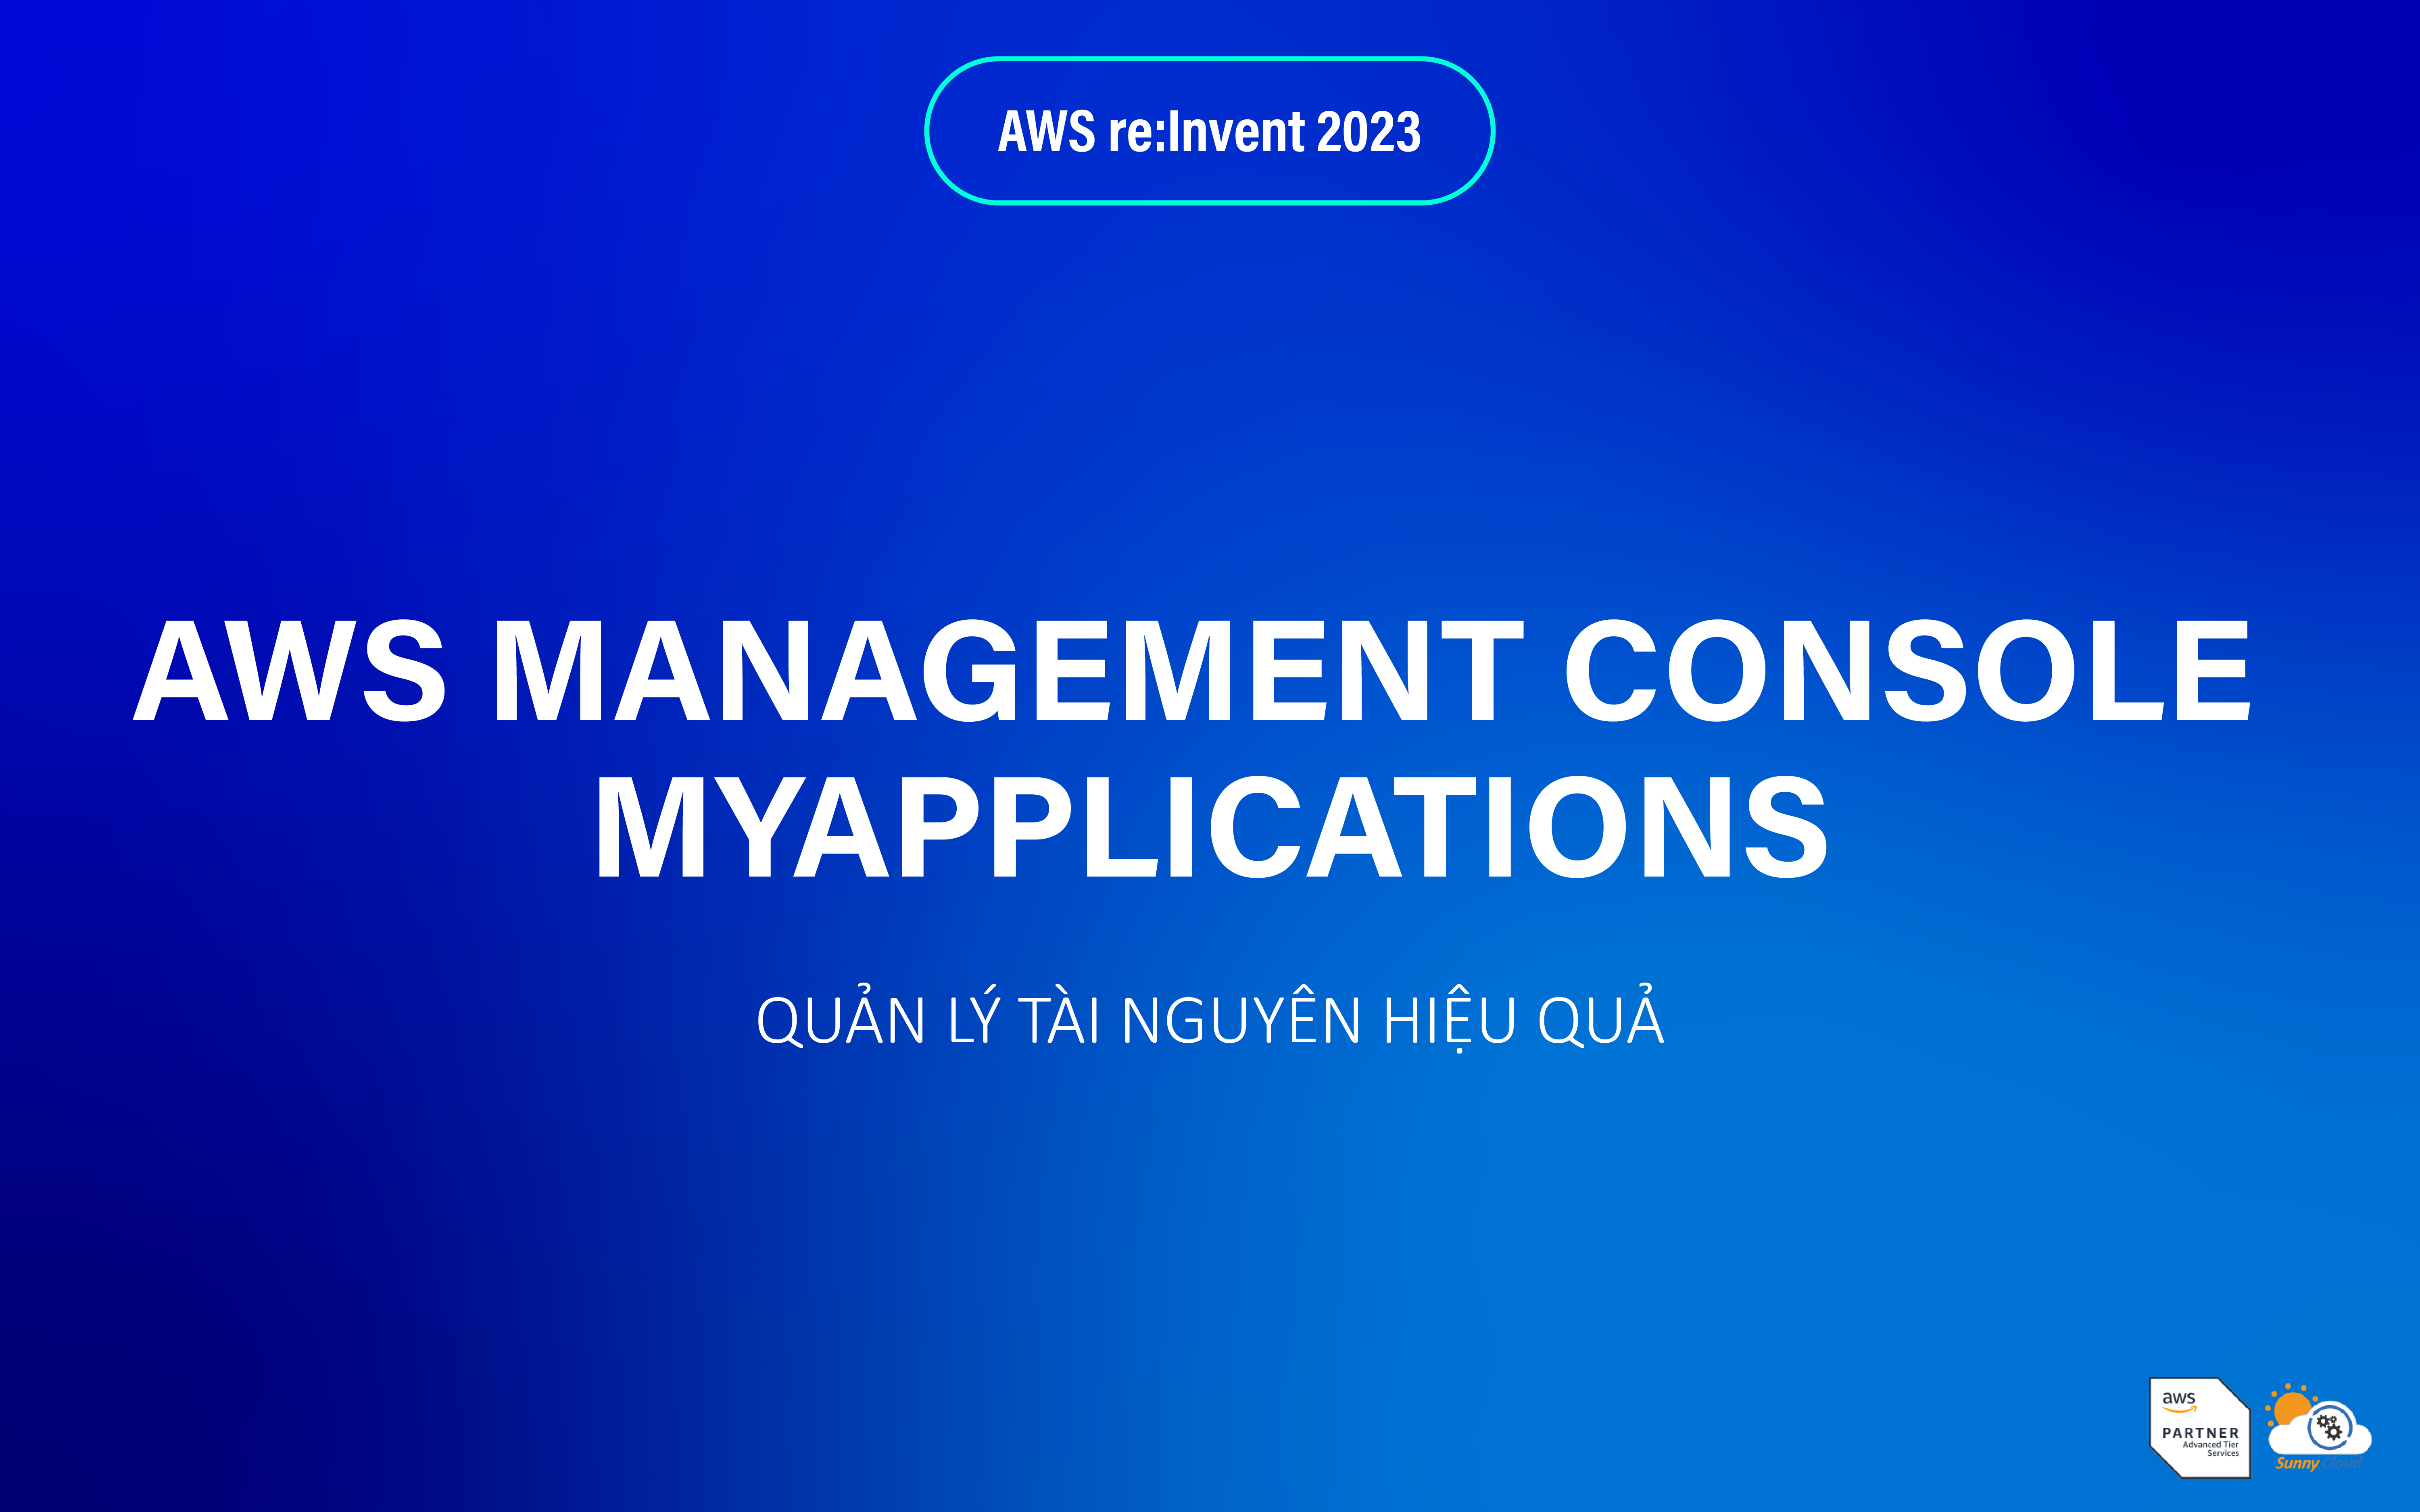 AWS Management Console myApplications – Quản lý tài nguyên hiệu quả